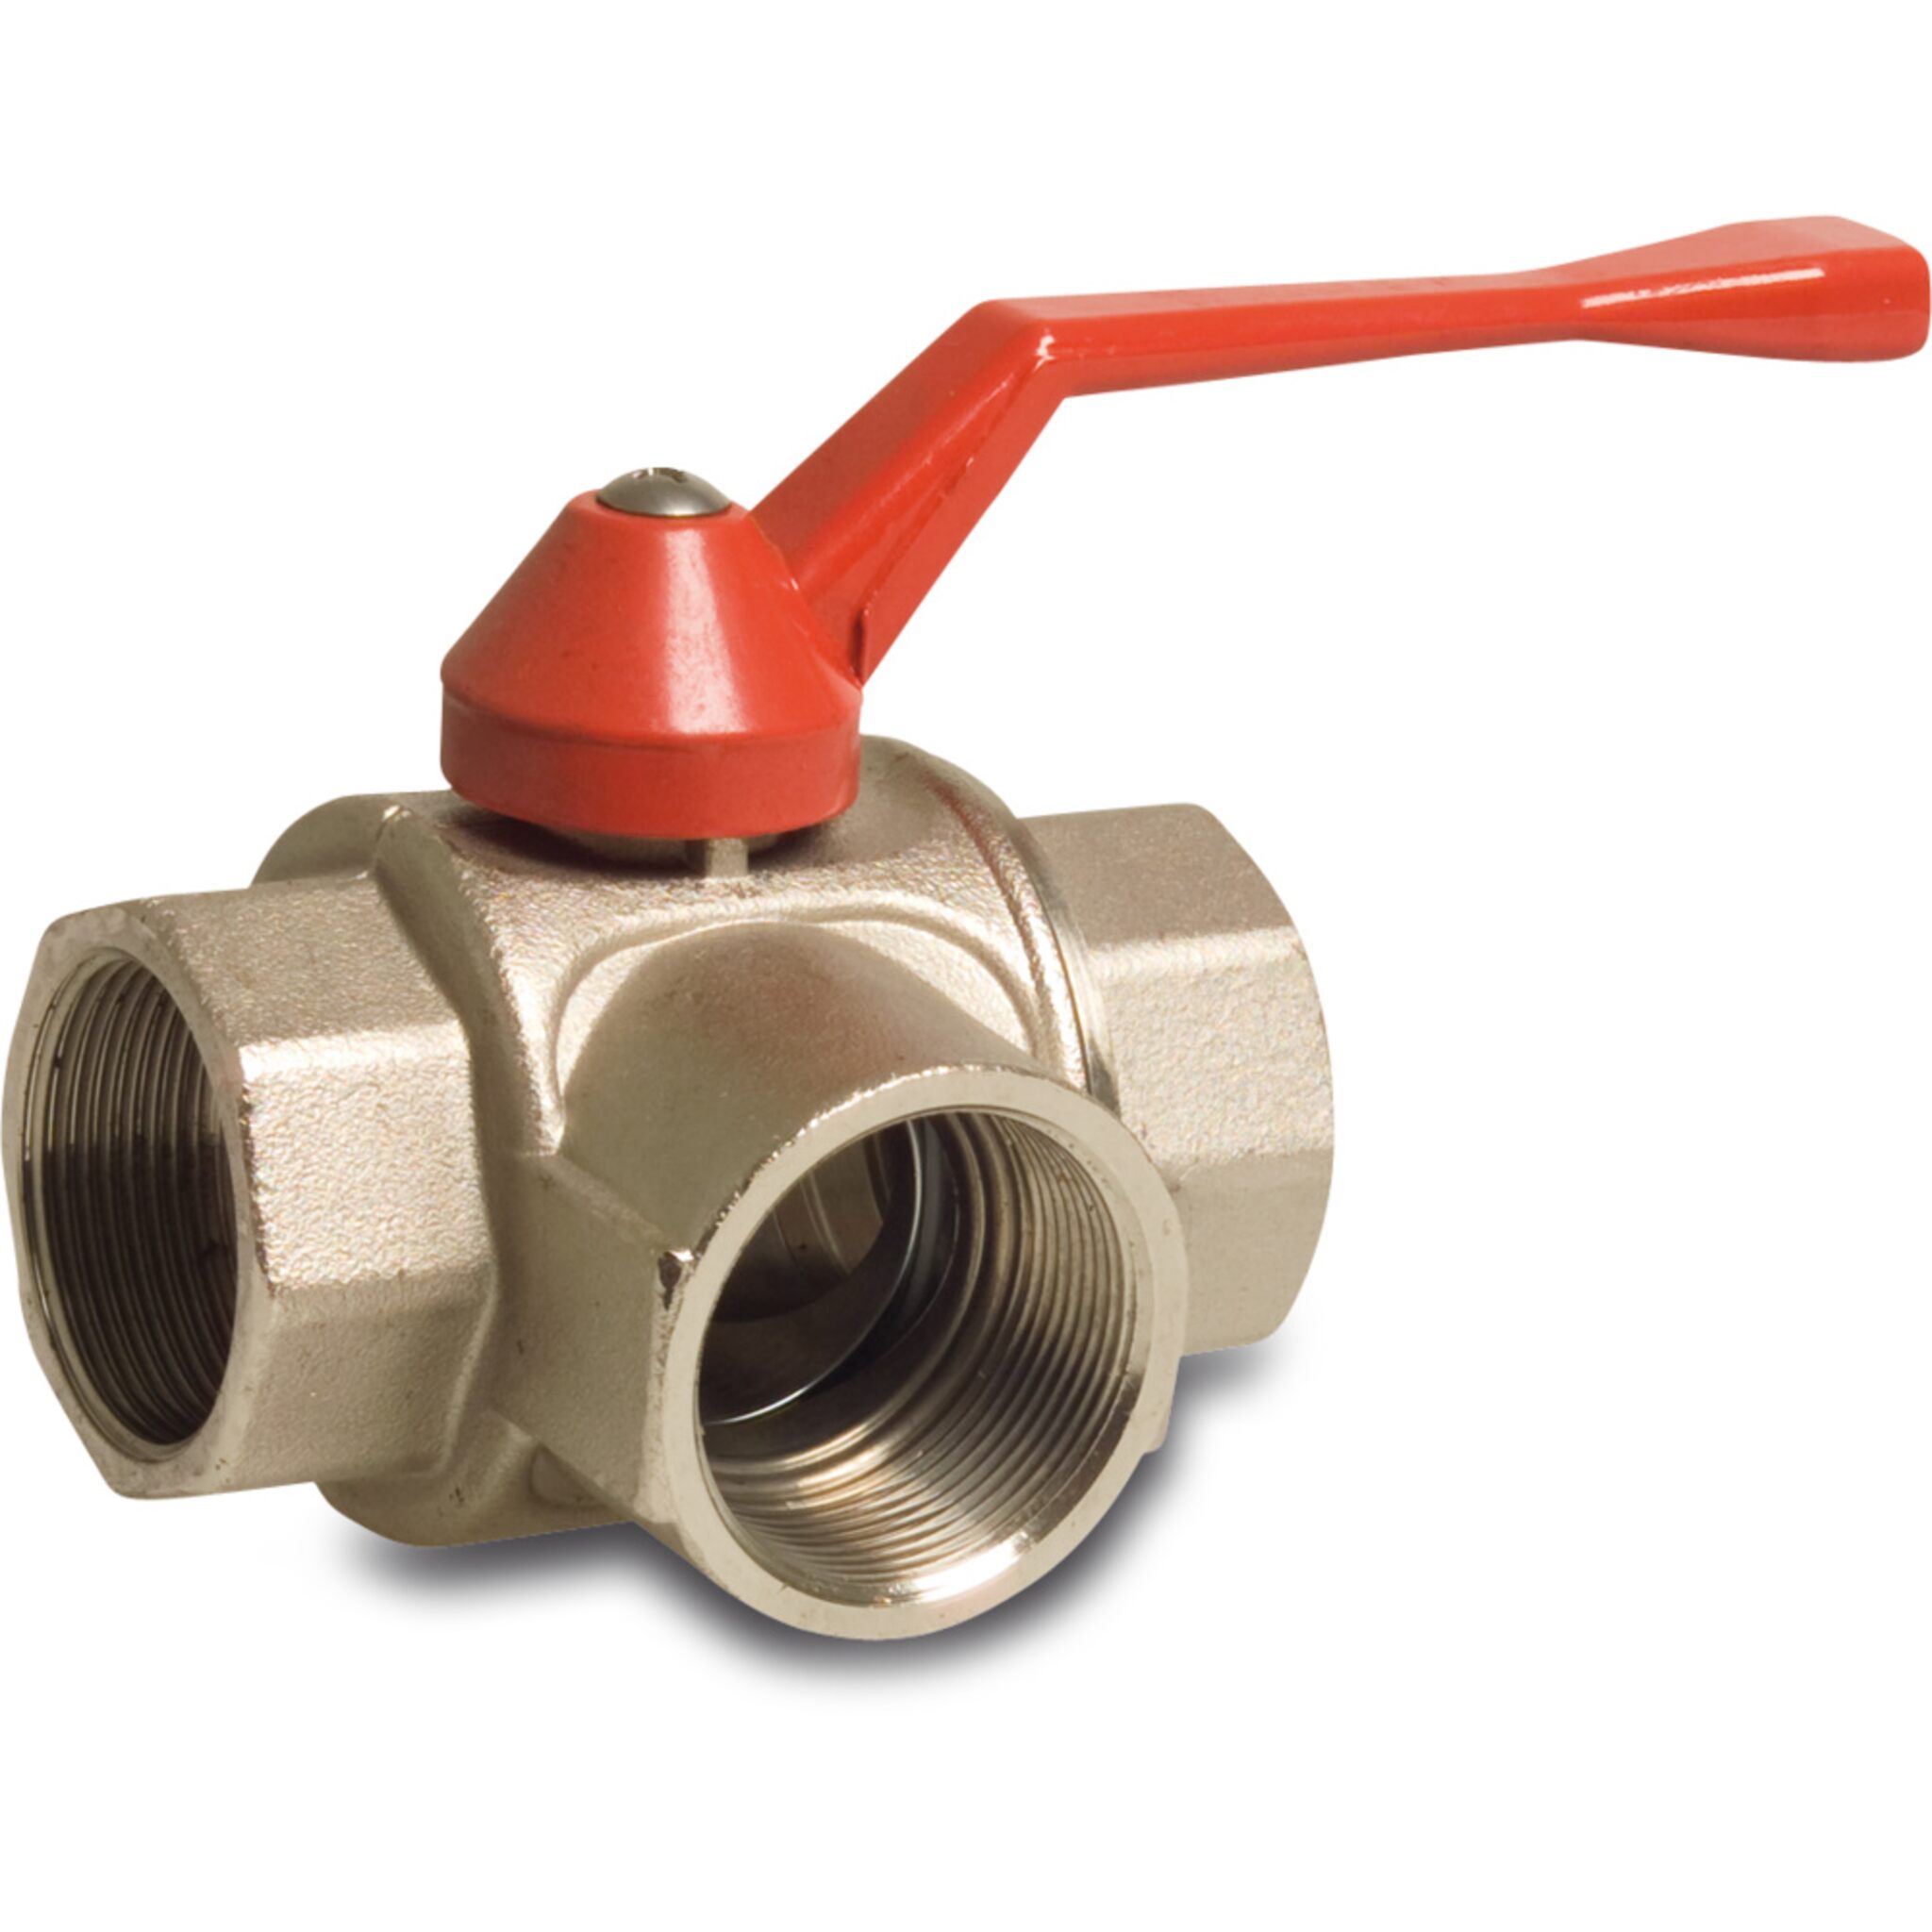 Three-way ball valve with T-bore